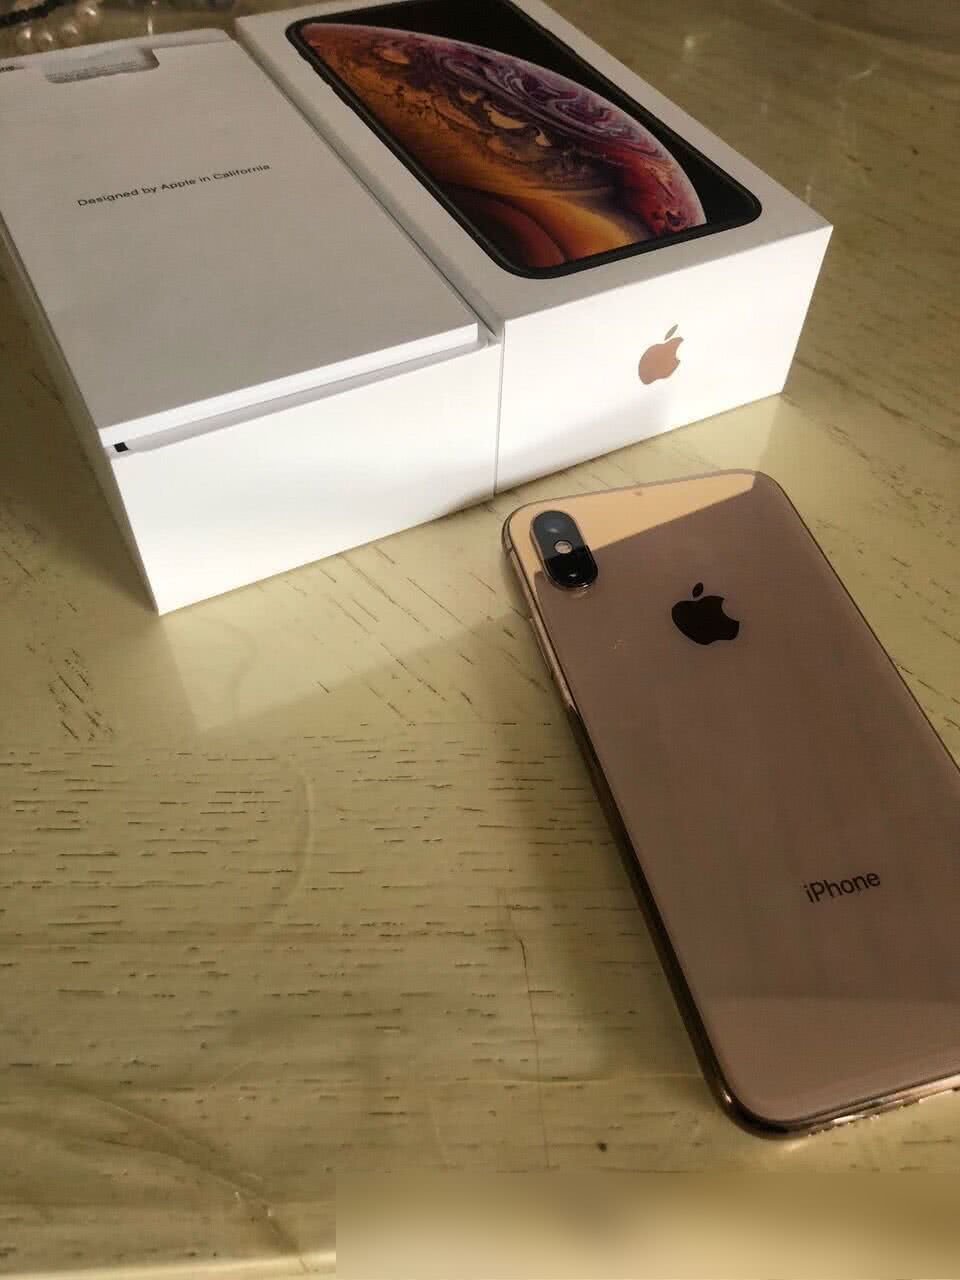 2019苹果即将发布的iPhone XI新机曝光,网友:看